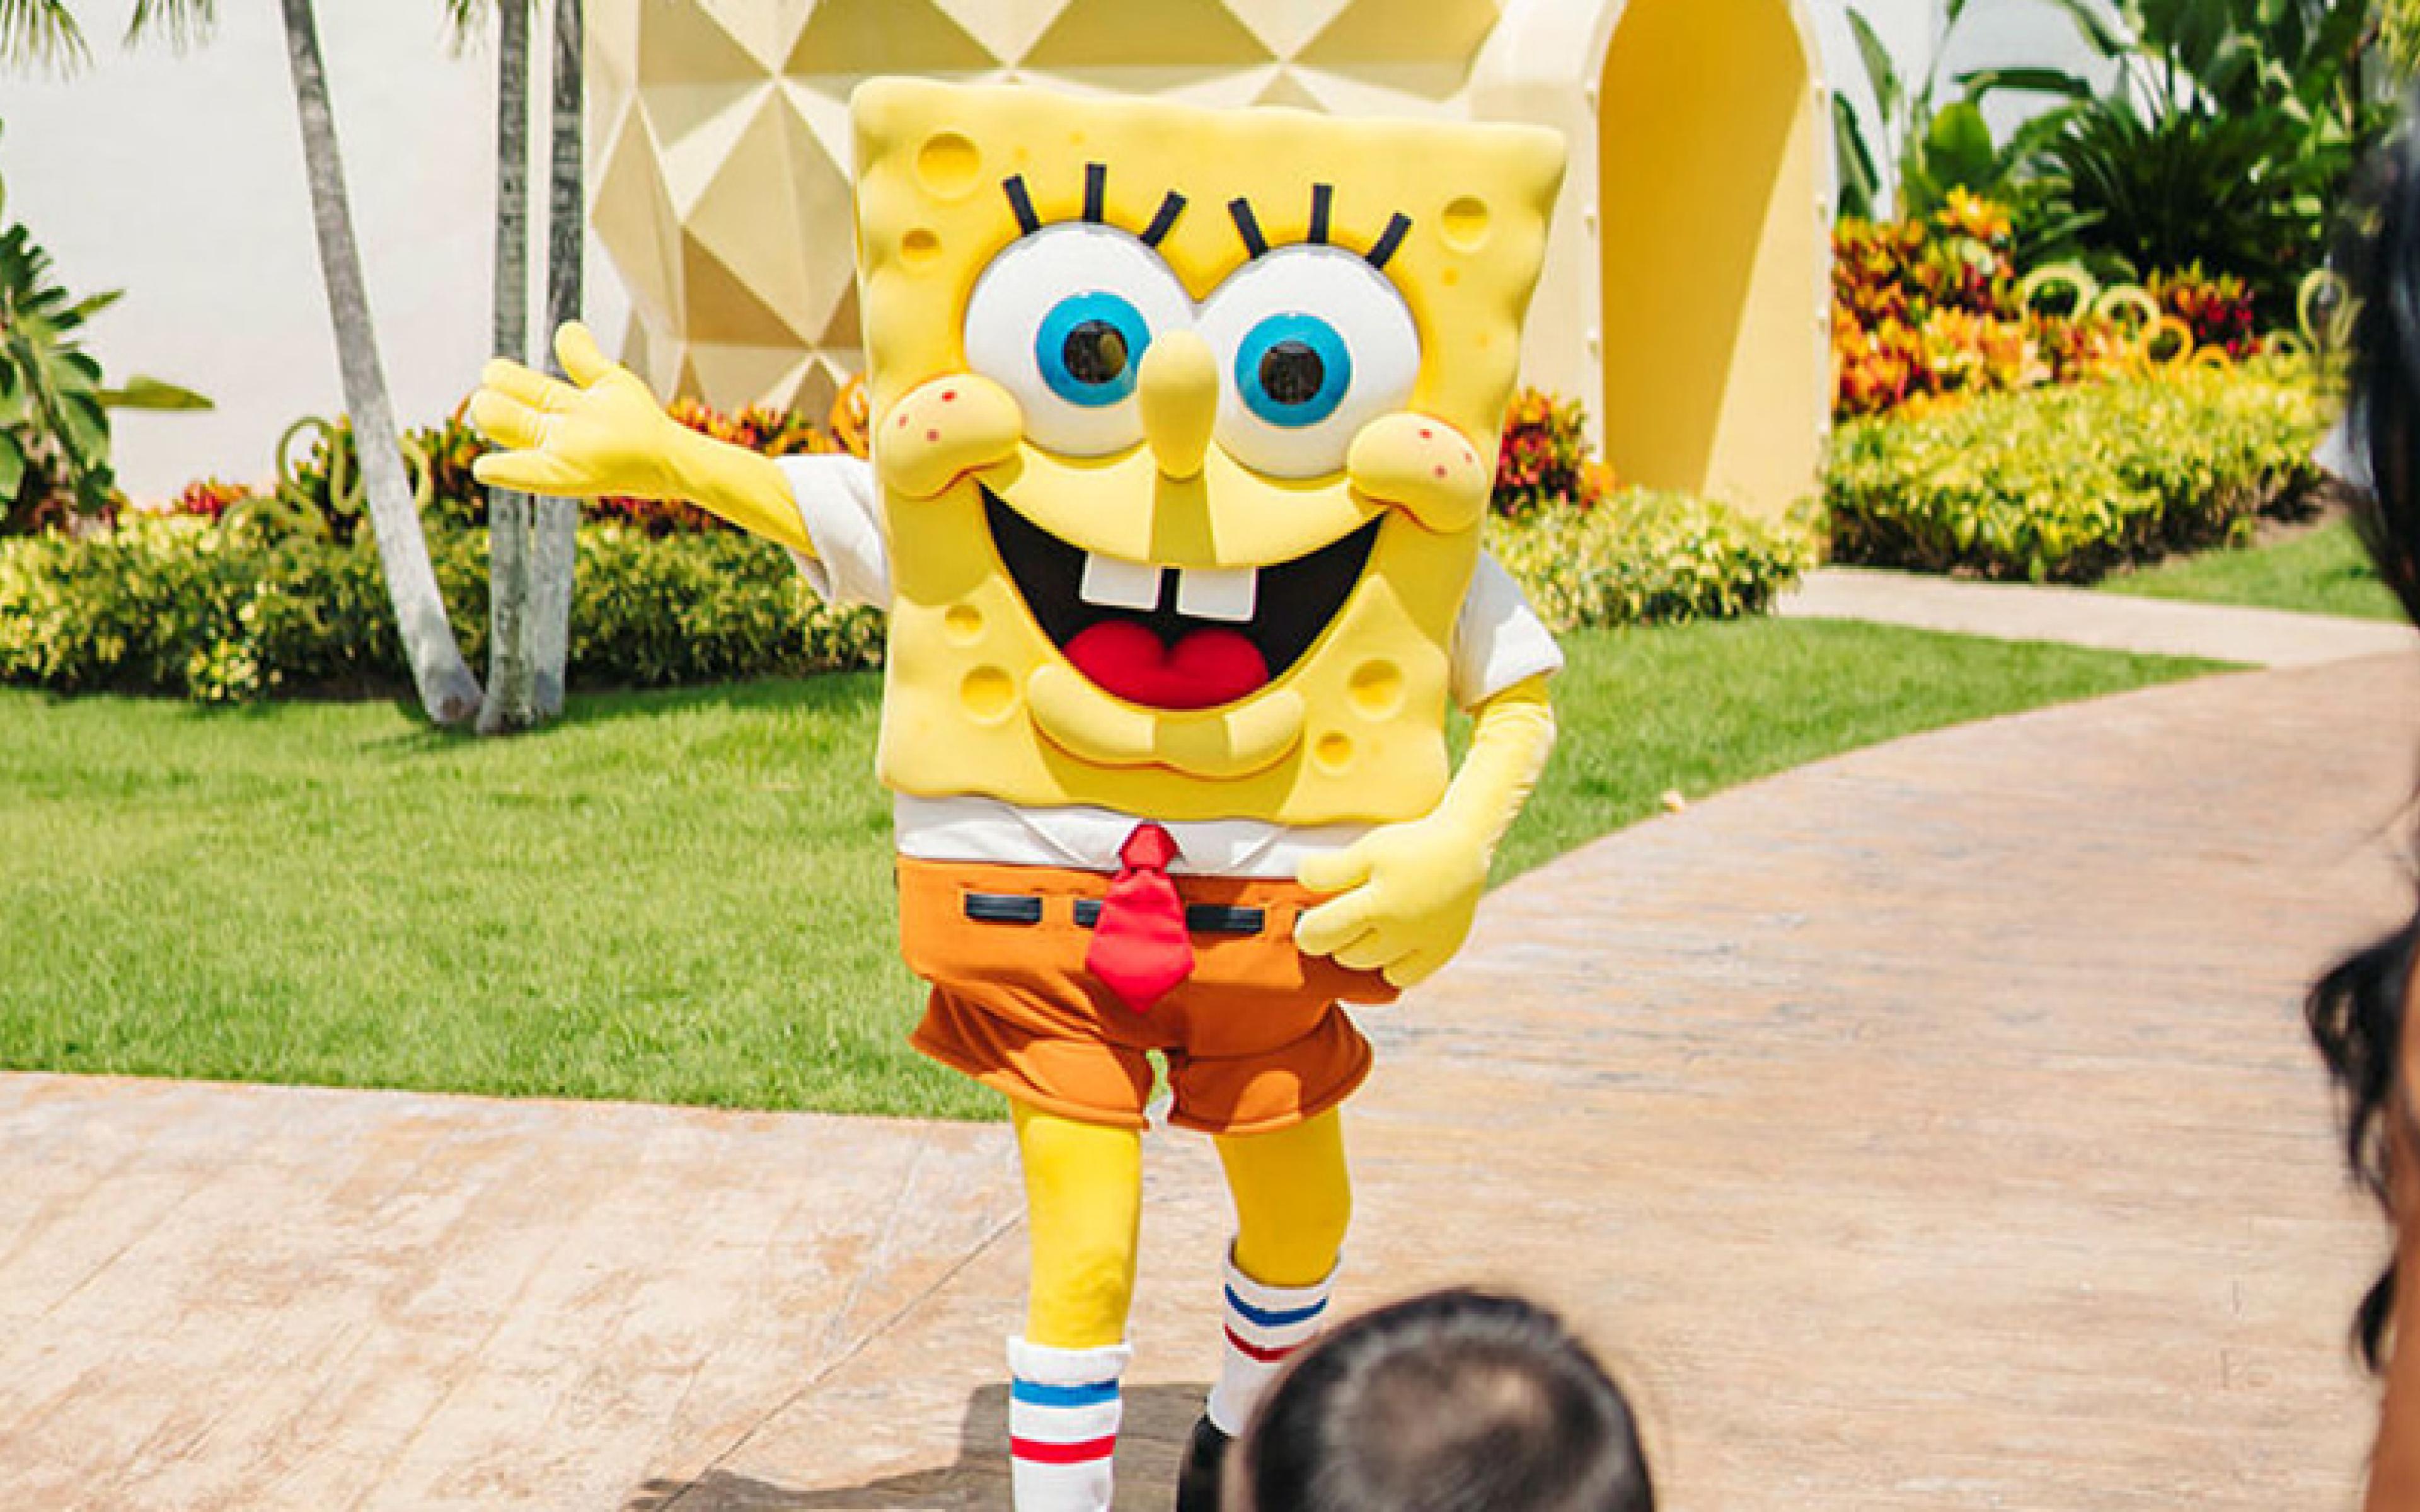 SpongeBob waving